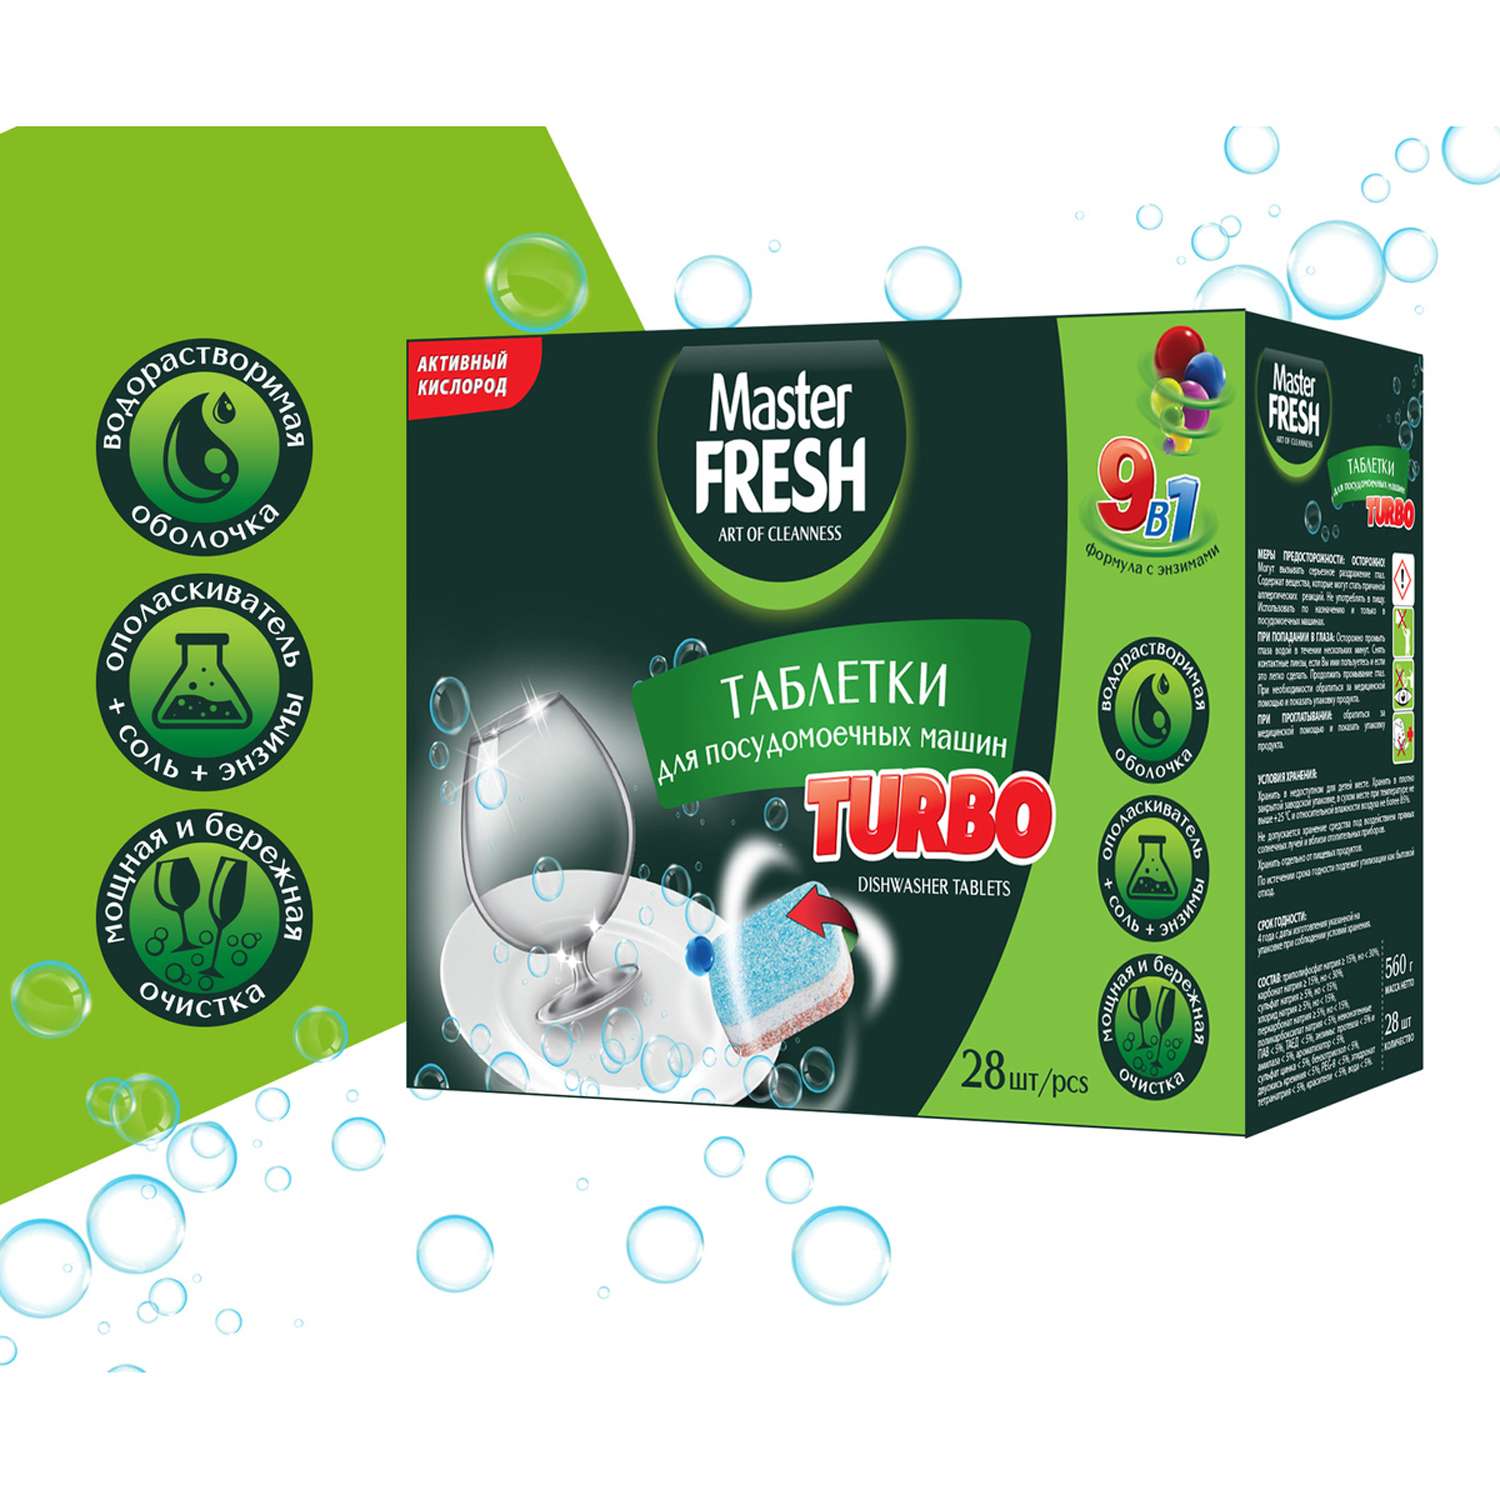 Таблетки Master fresh для посудомоечной машины turbo9-в-1 28 шт - фото 2